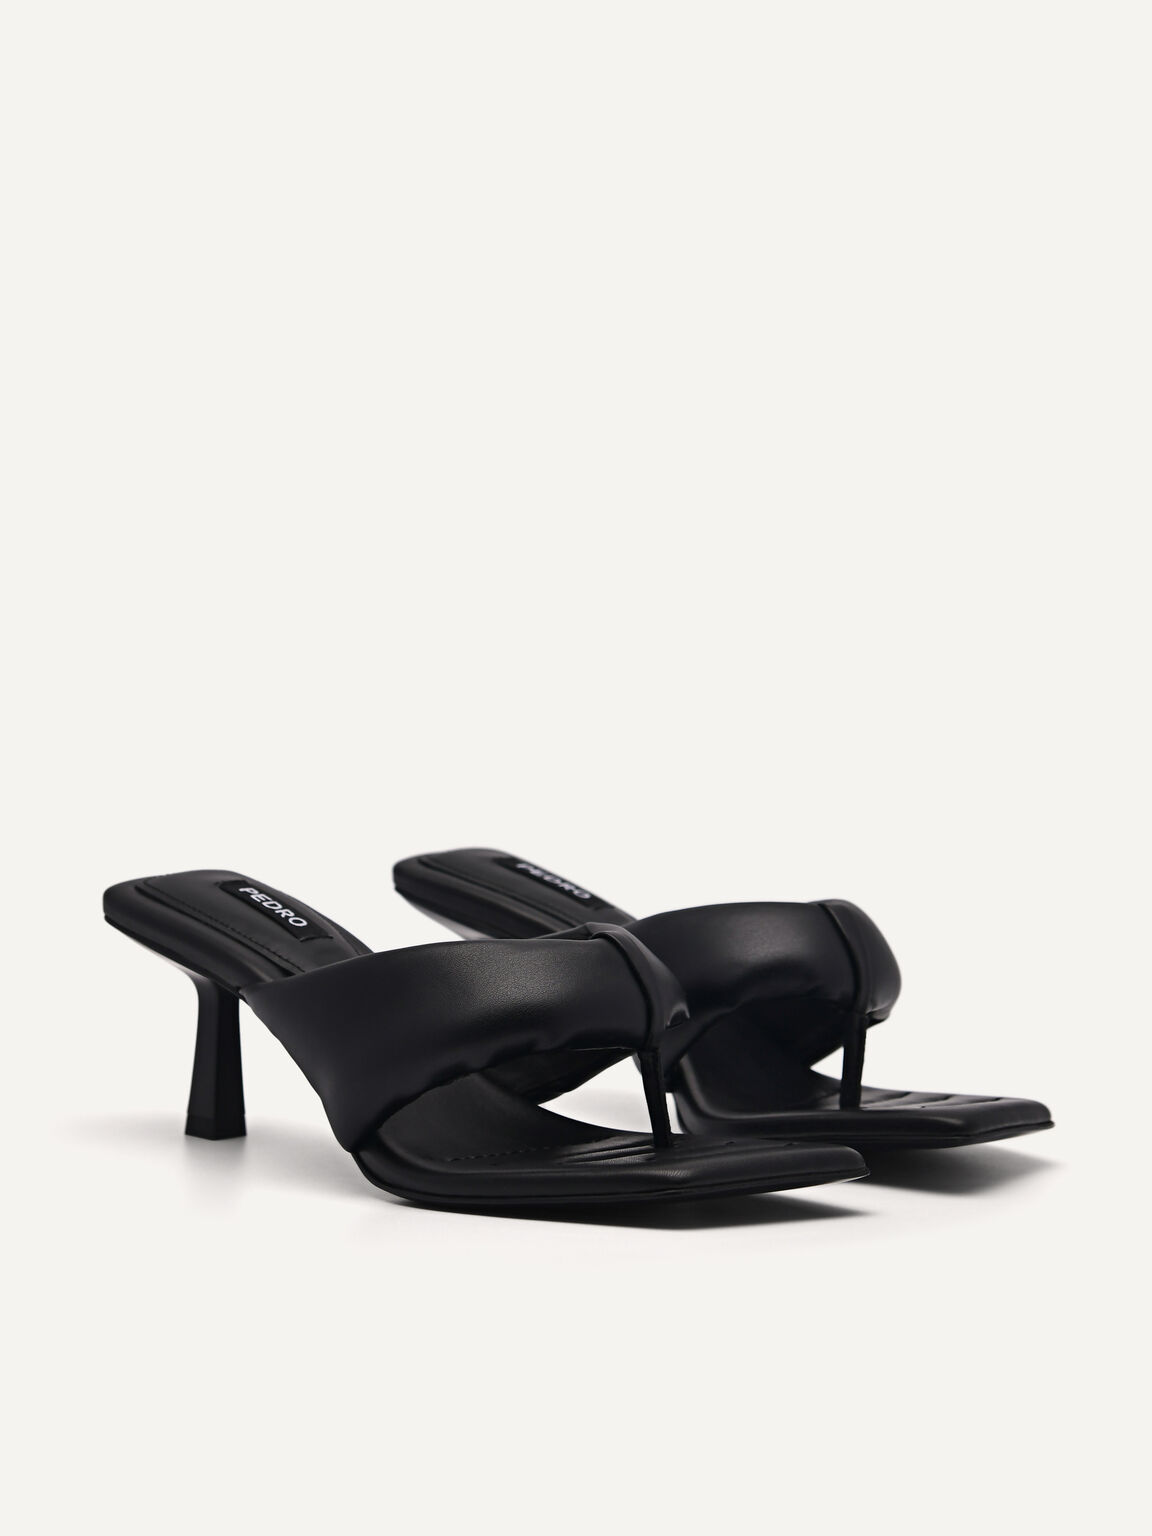 Tilly Heel Sandals, Black